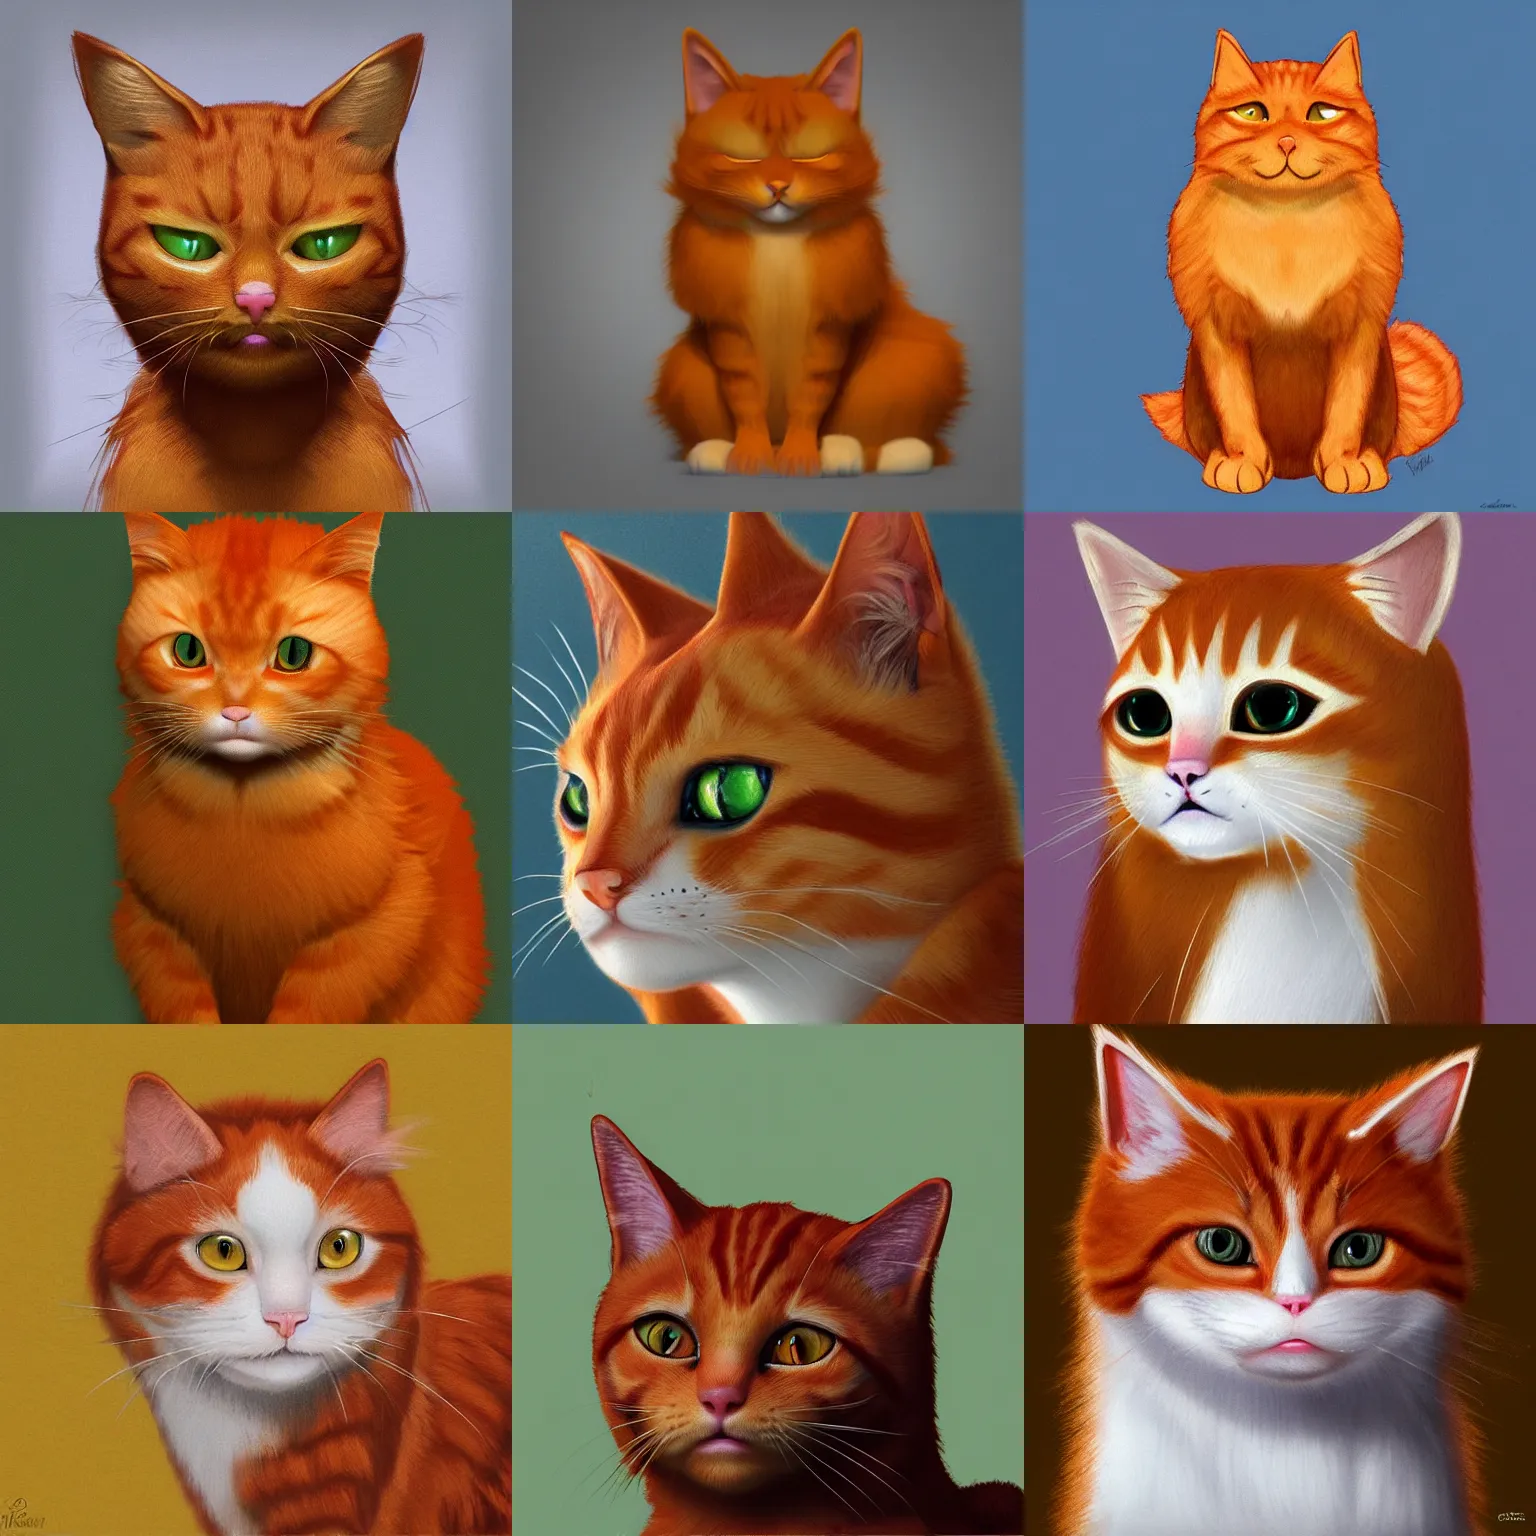 Prompt: ginger cat, trending on artstation